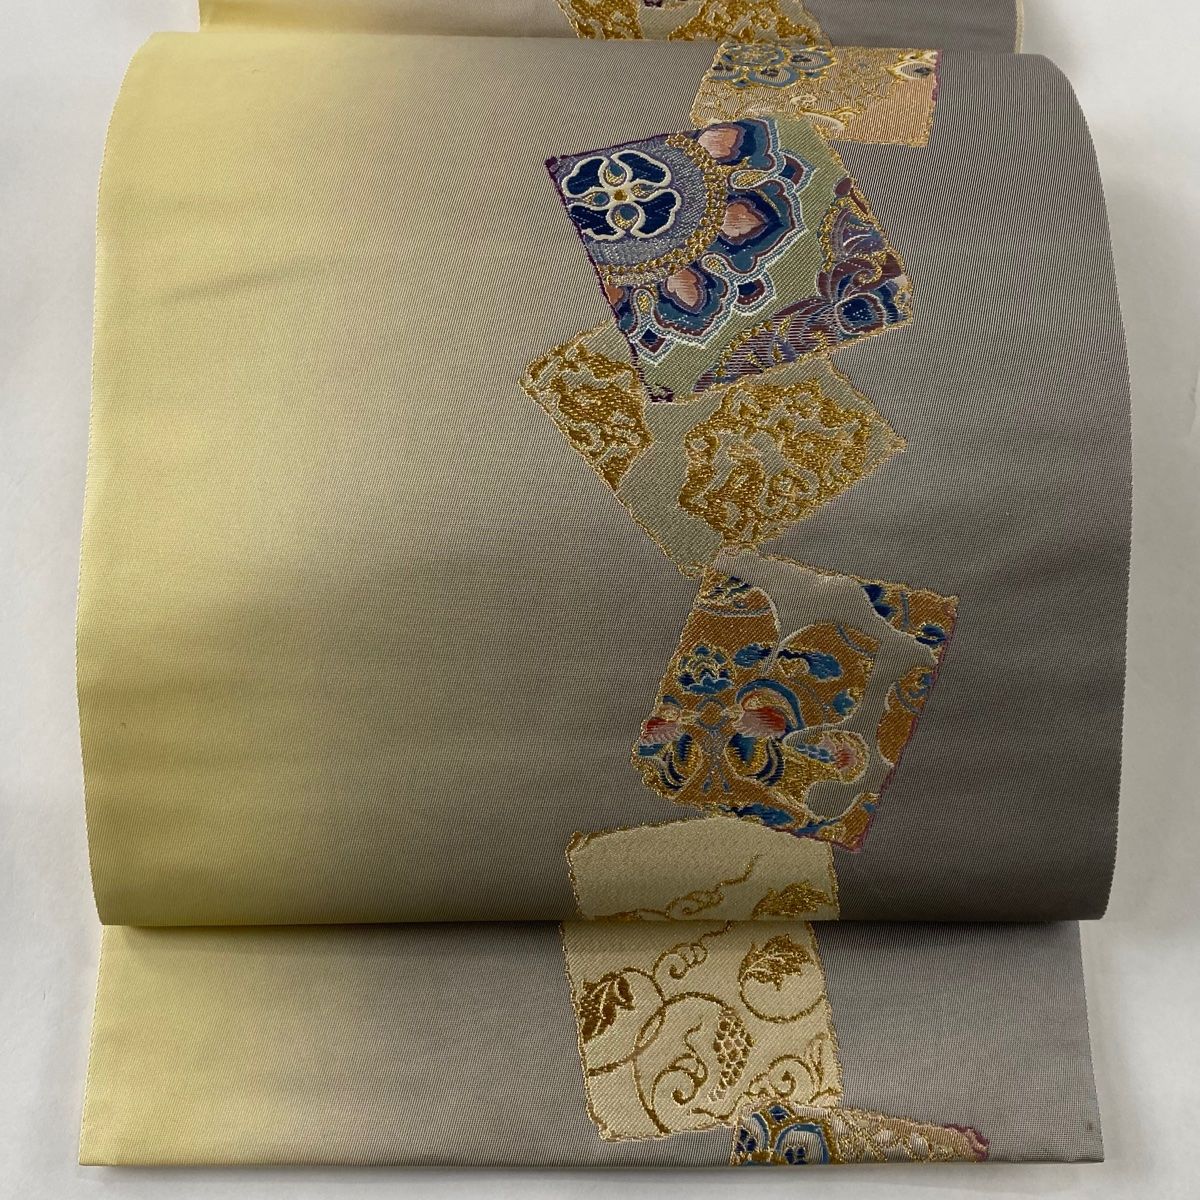 アクロンさま専用 正絹 袋帯  シルバーグレー  色紙文  亀甲  七宝  六通帯